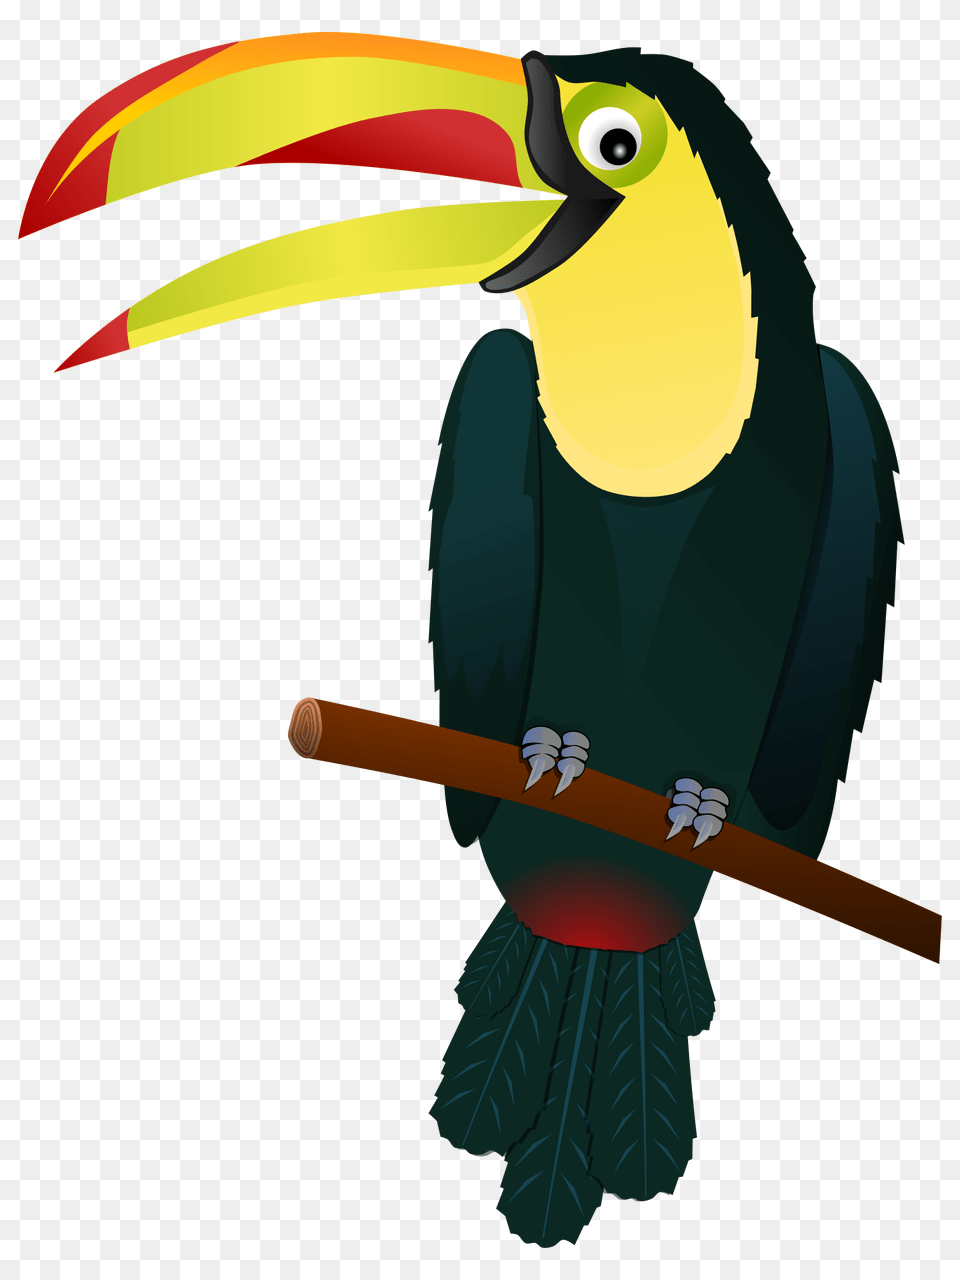 Download Toucan Tropical Bird Clipart, Animal, Beak Free Transparent Png